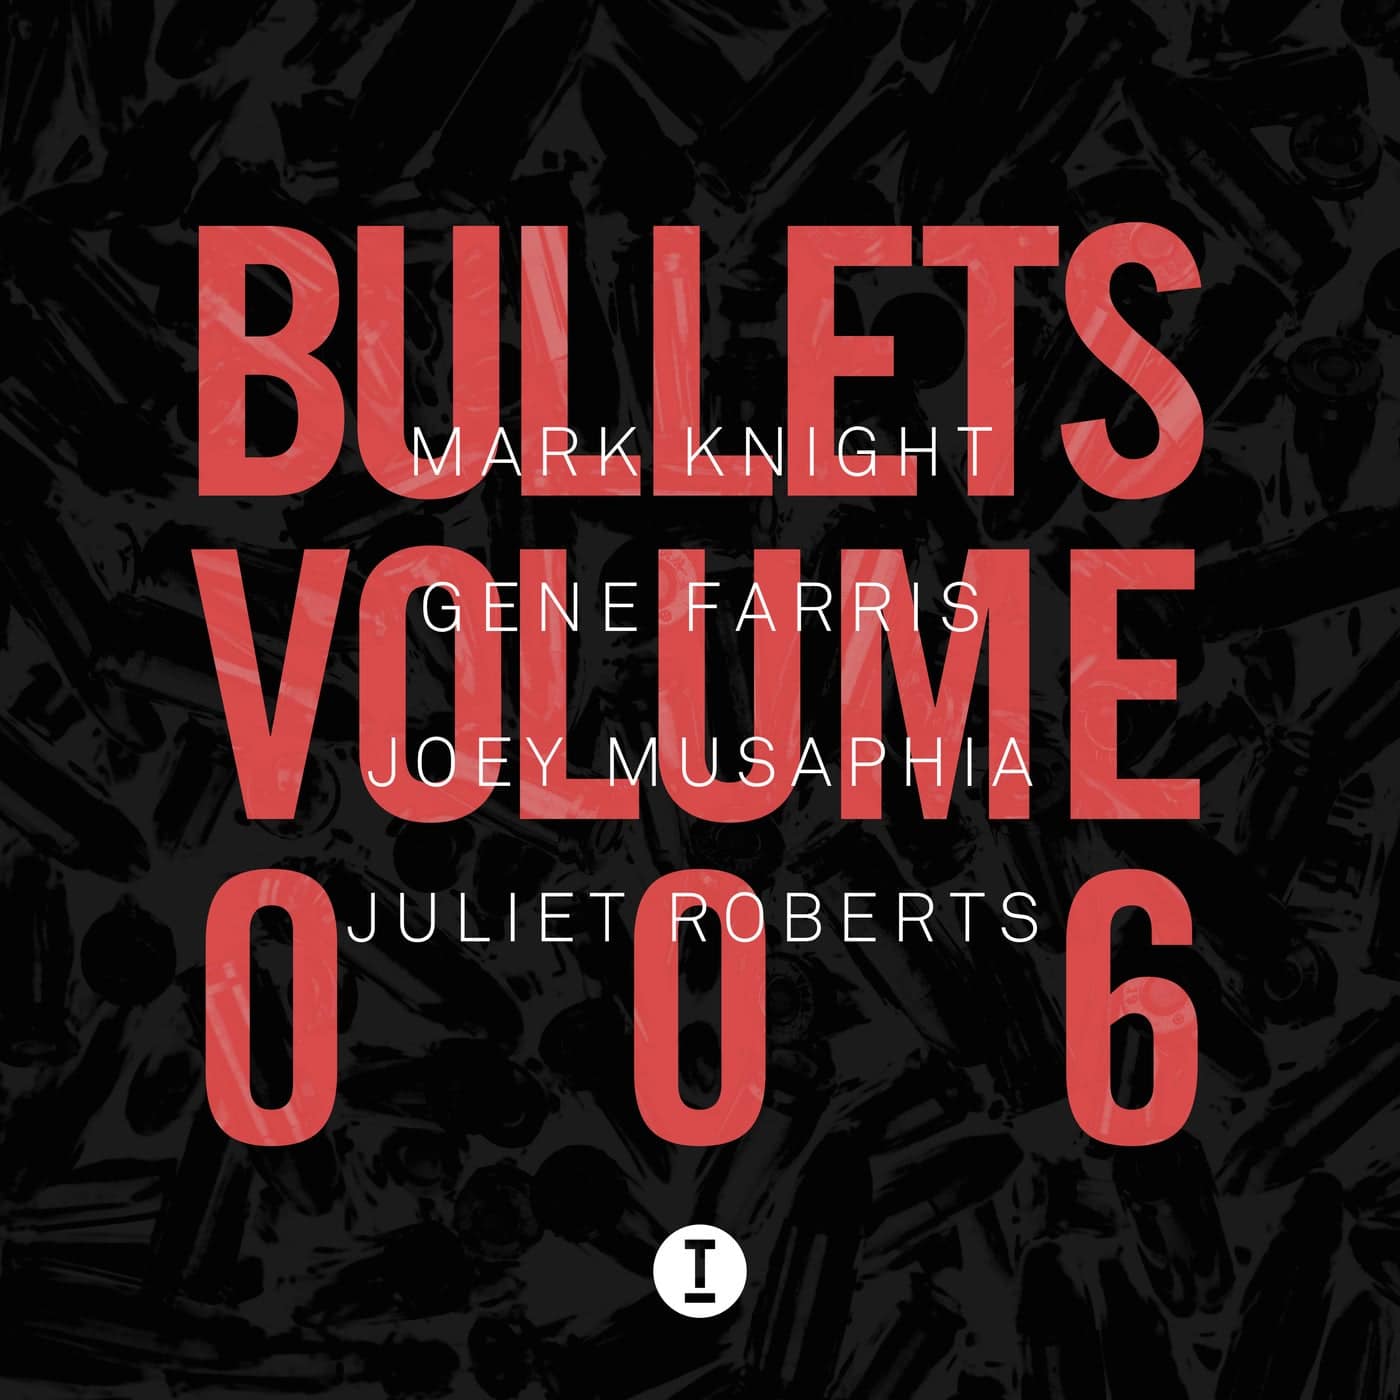 Download Mark Knight - Bullets Vol. 6